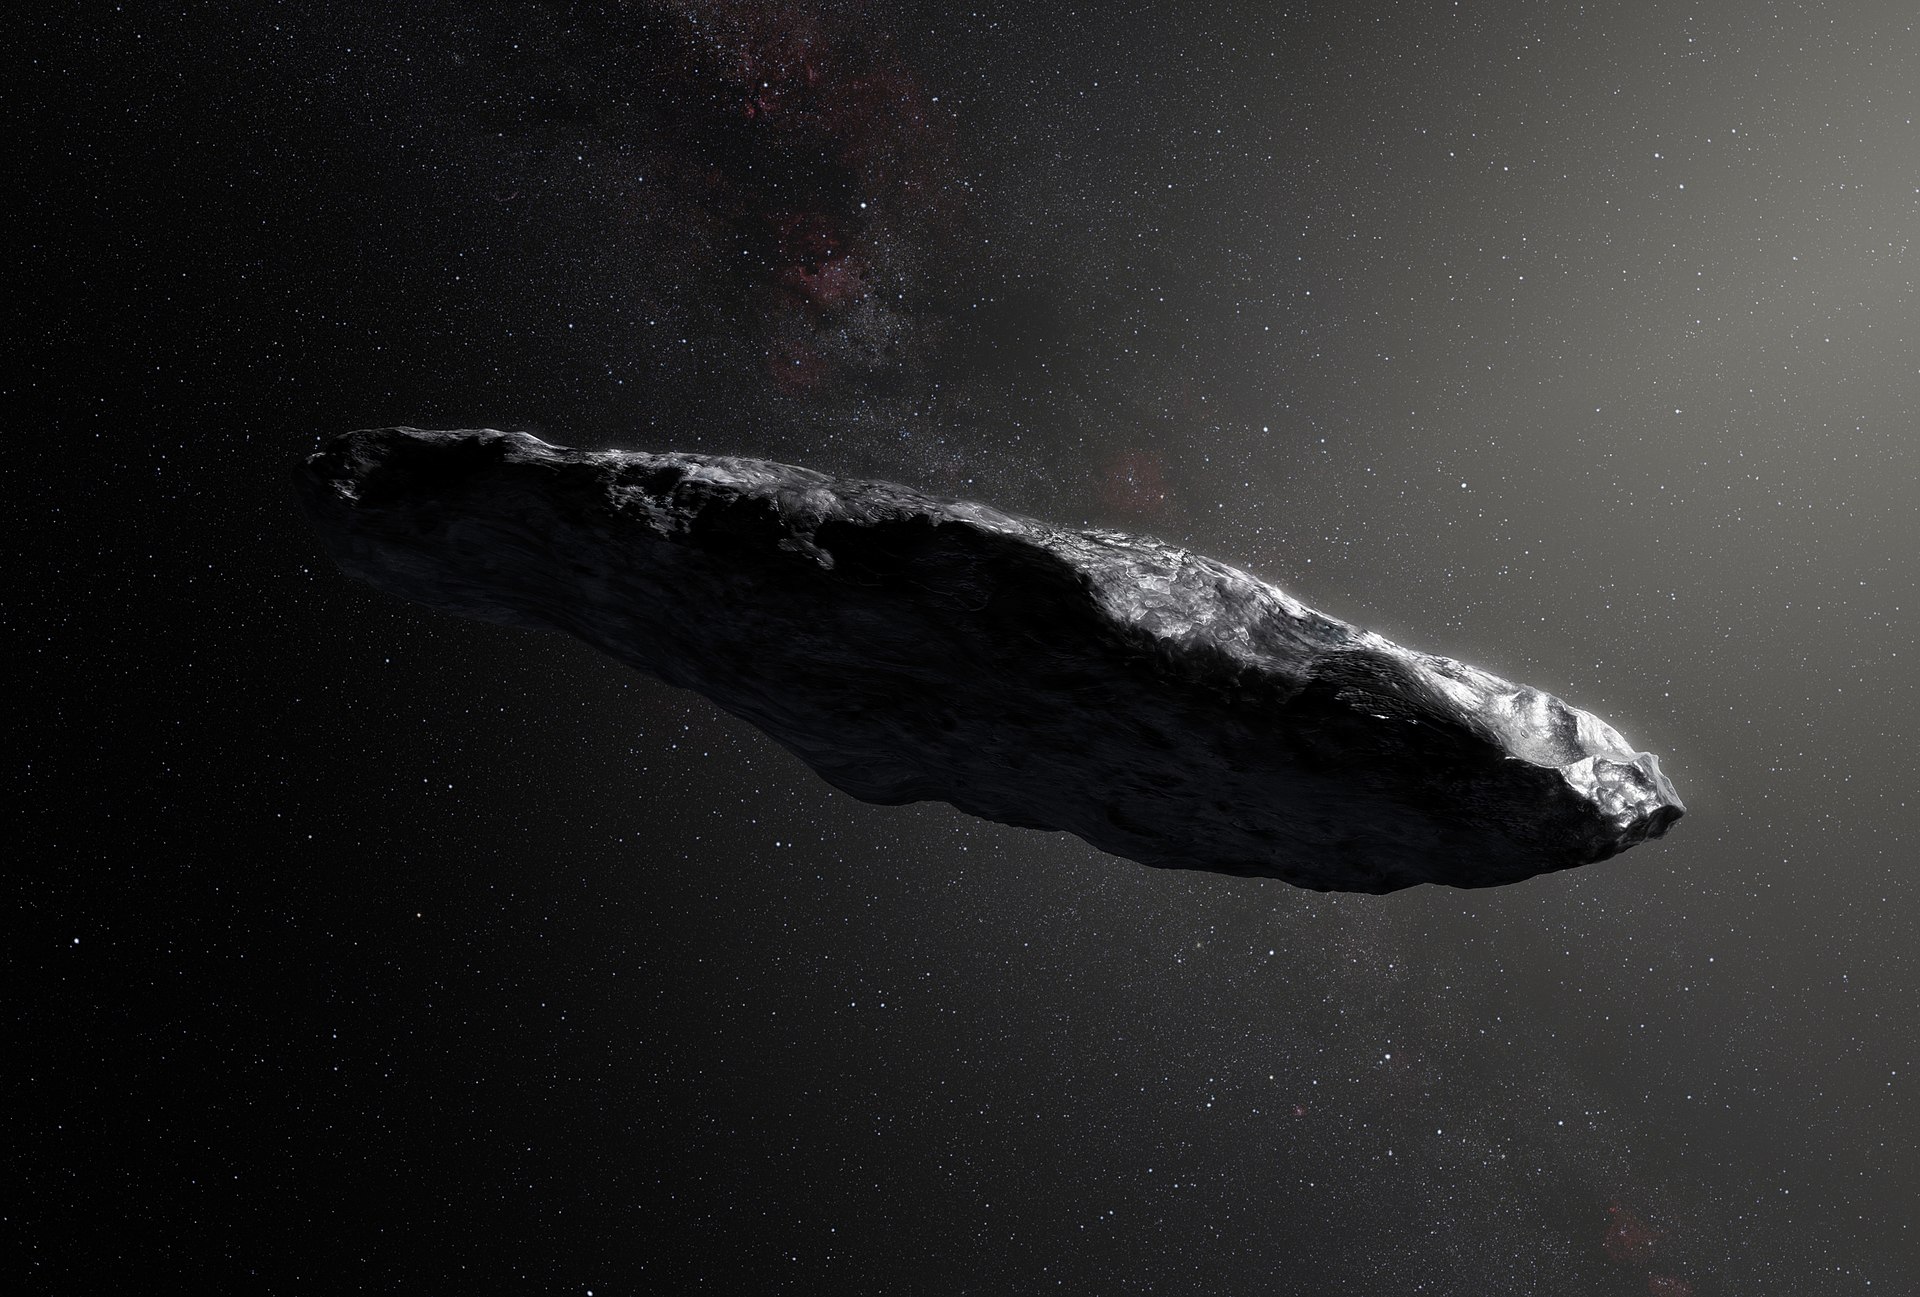 Cette impossible (ou improbable) mission souhaiterait rejoindre l'étrange astéroïde interstellaire 'Oumuamua